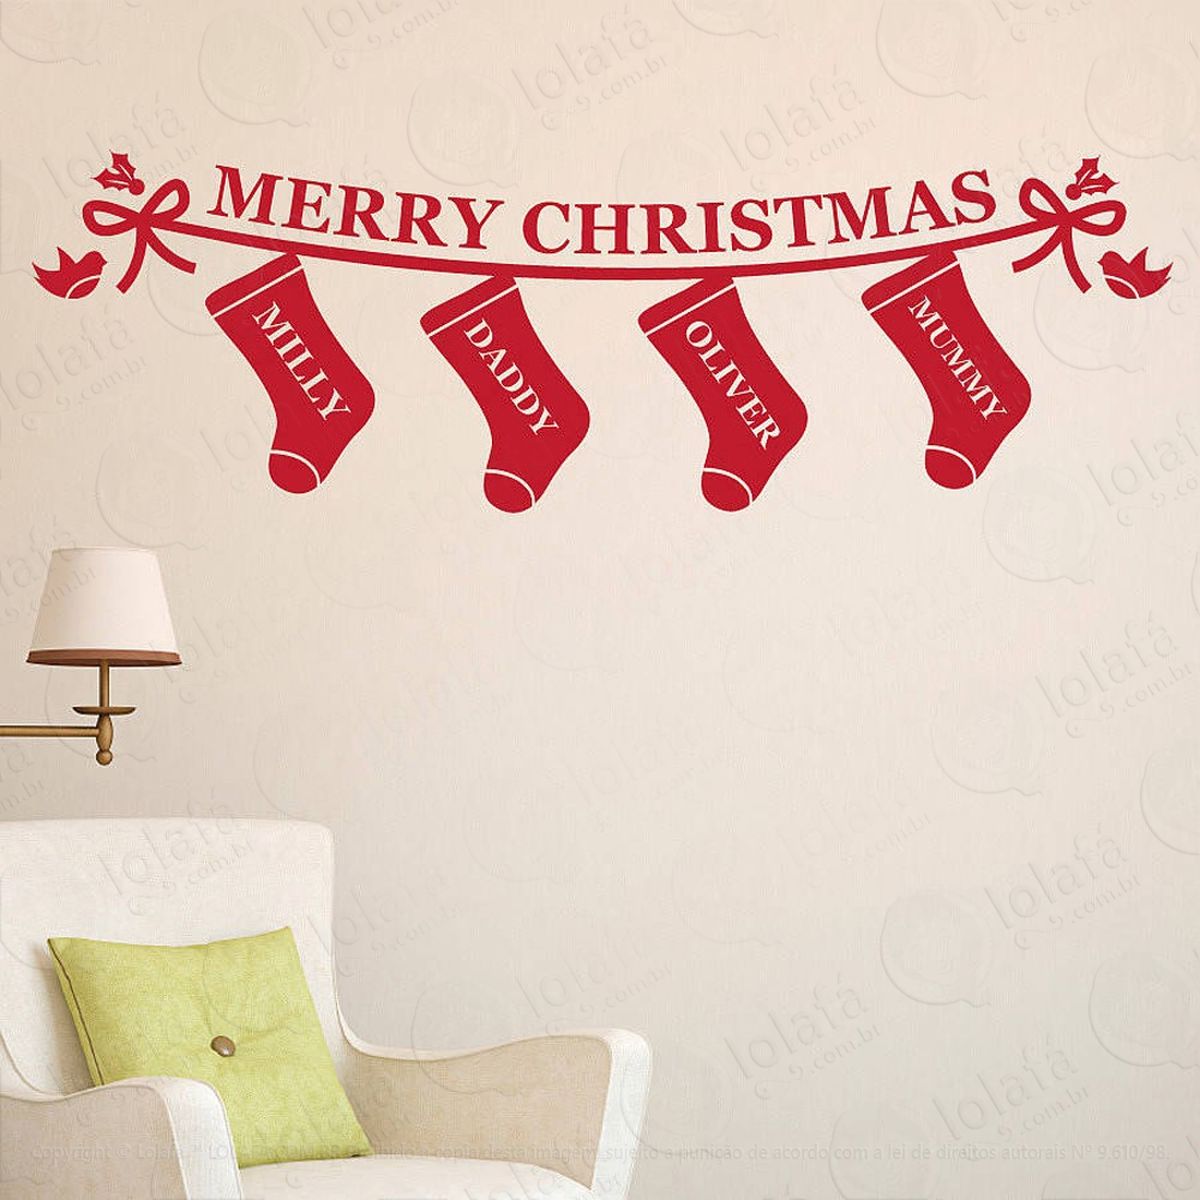 botinhas família adesivo de natal para vitrine, parede, porta de vidro - decoração natalina mod:64